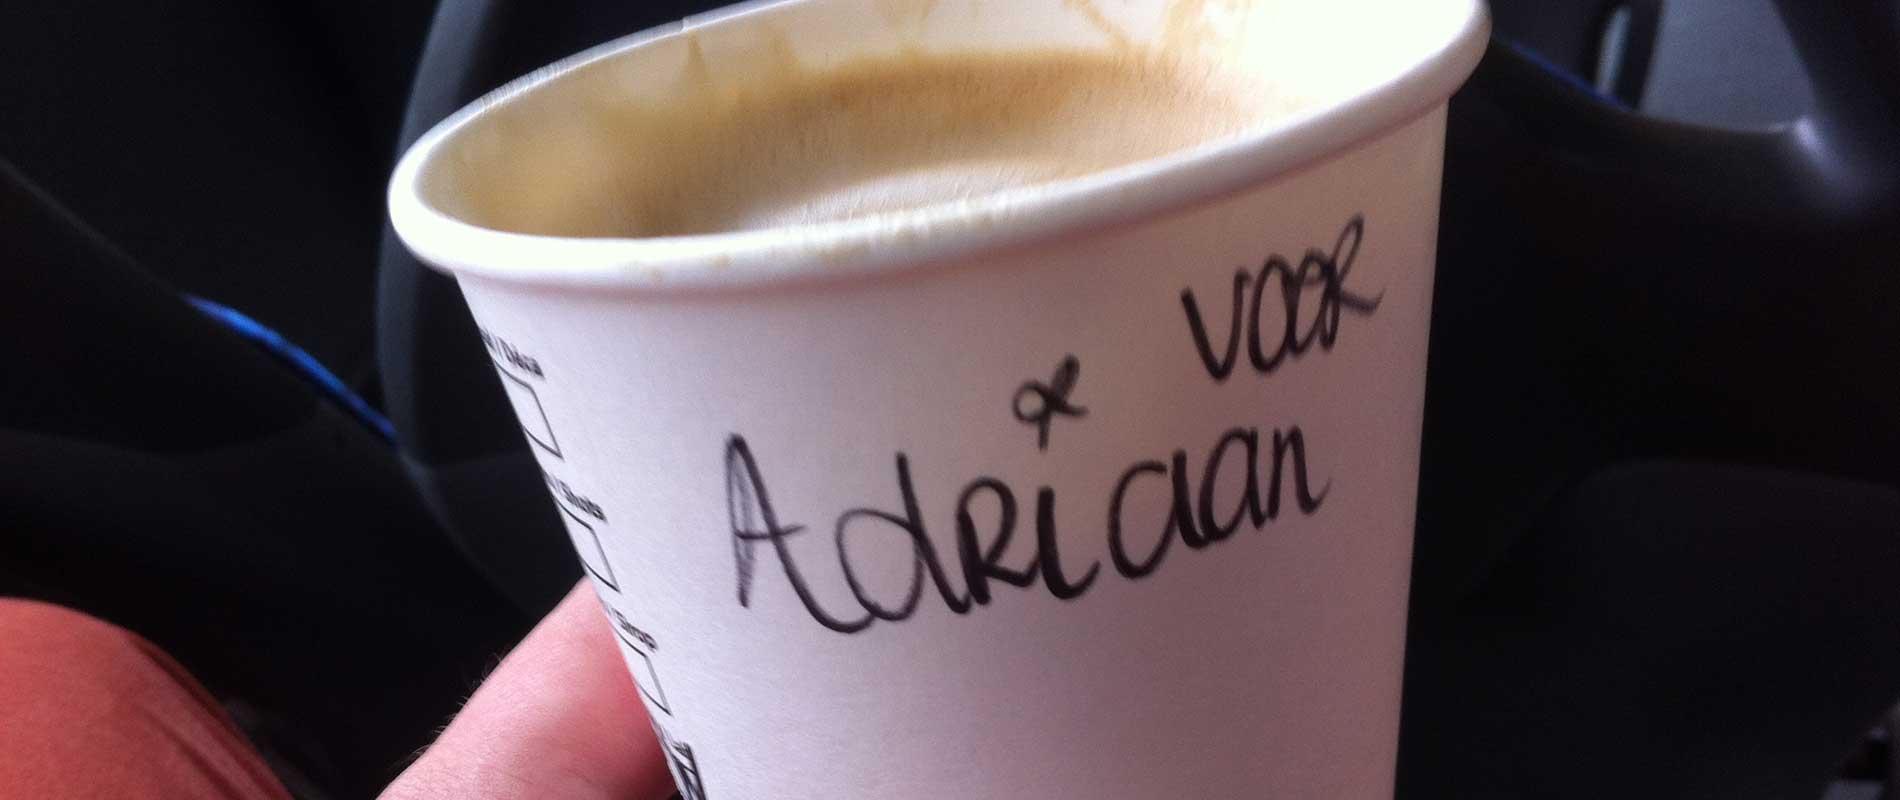 De koffiebeker van Adriaan bij de Starbucks